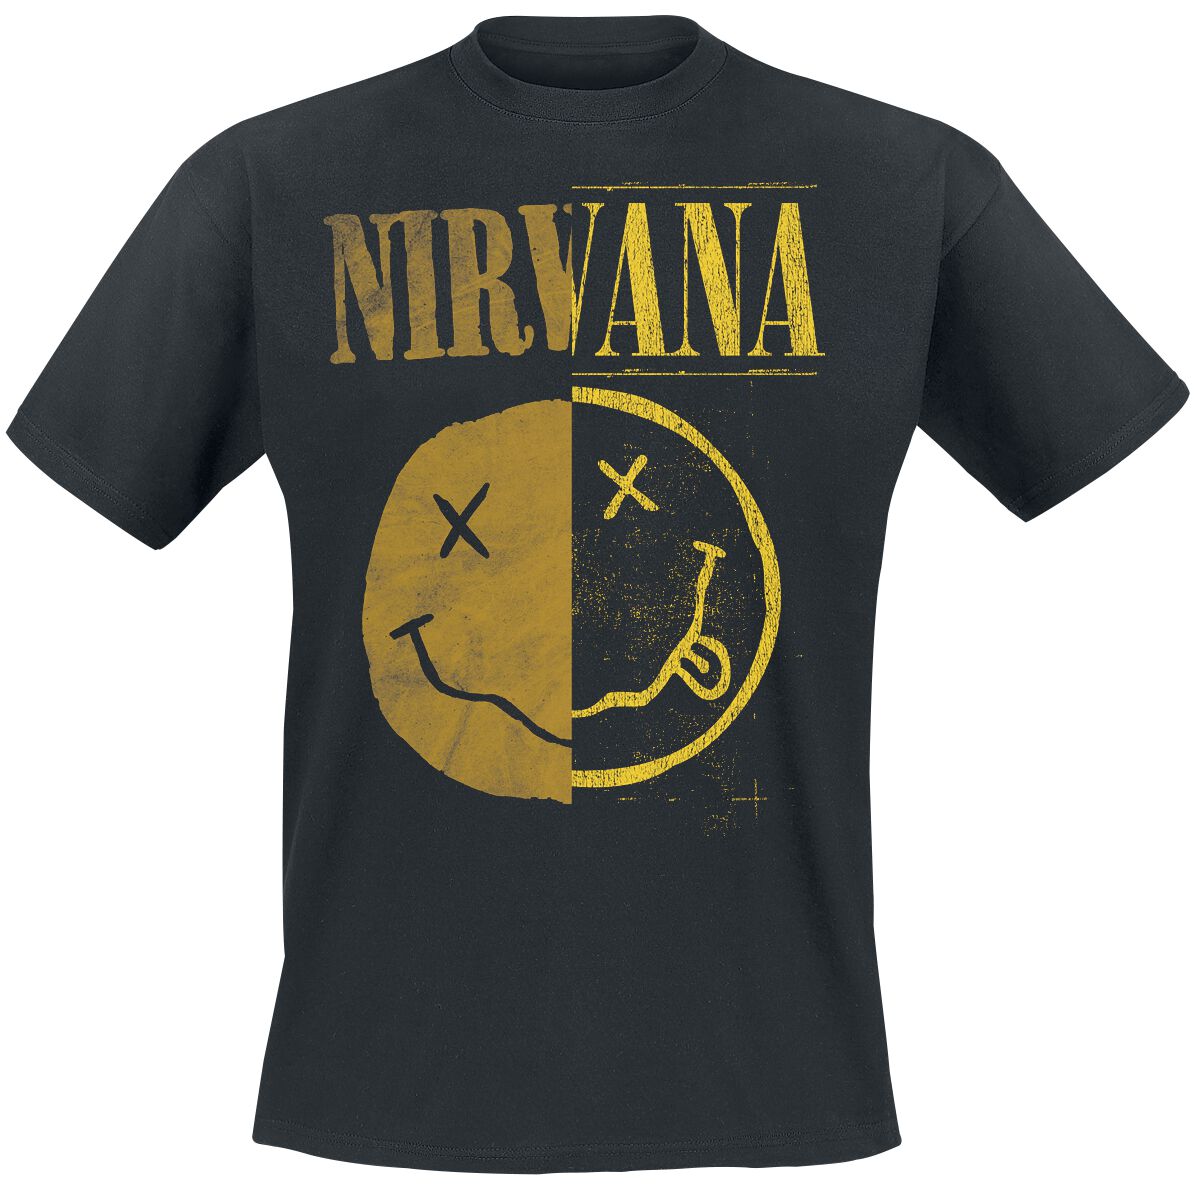 Nirvana T-Shirt - Spliced Smiley - S bis XXL - für Männer - Größe XXL - schwarz  - Lizenziertes Merchandise!